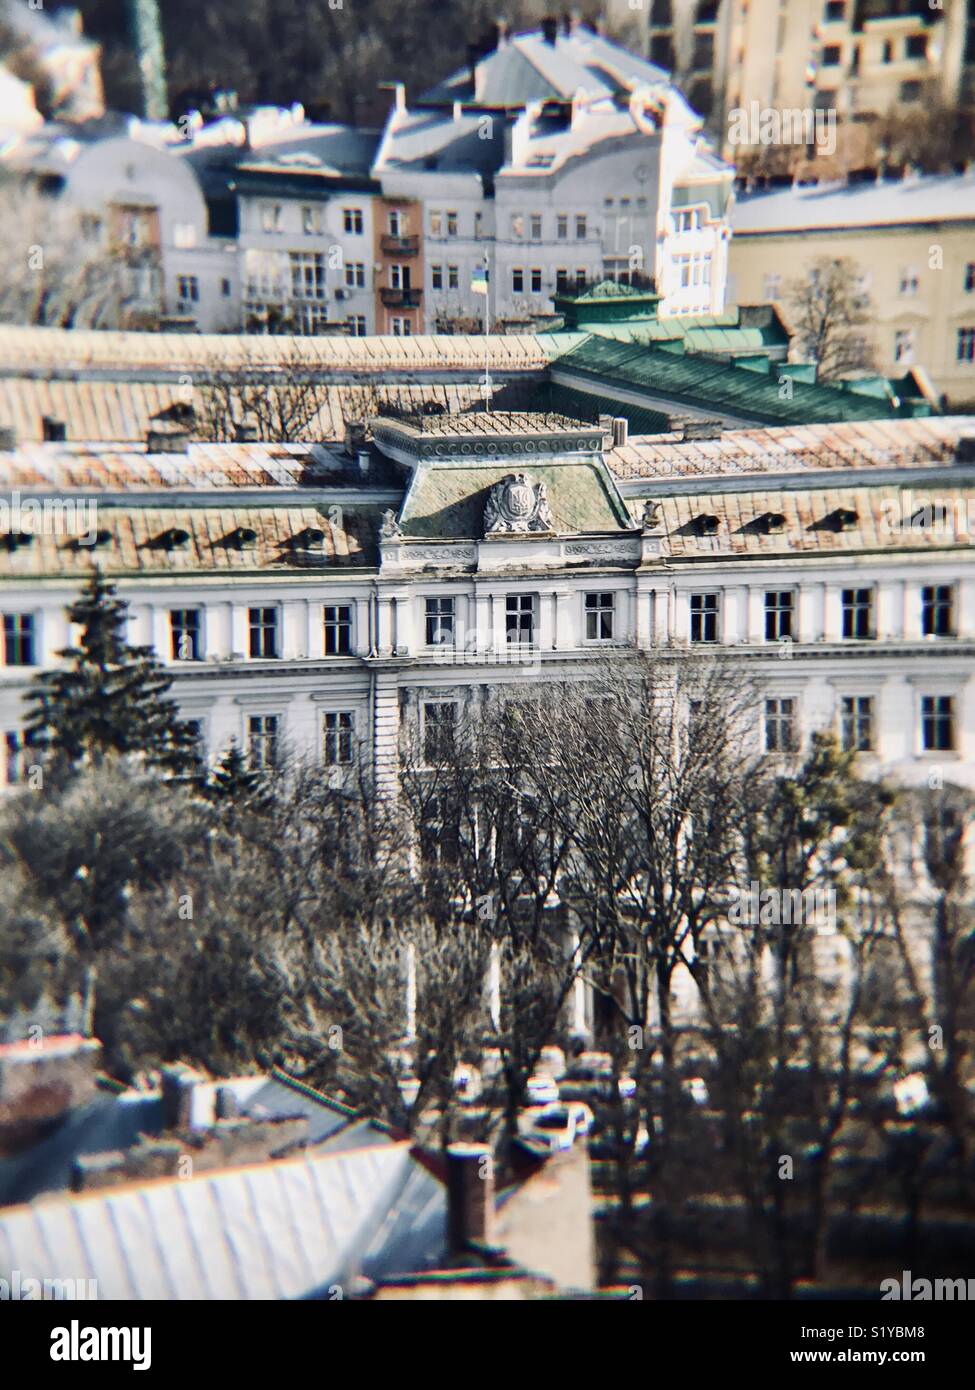 La sede del governo a Lviv (1870)- L'edificio rinascimentale austriache della vice-regency a partire dal quale il regno di Galizia e Lodomeria era governata. Foto Stock